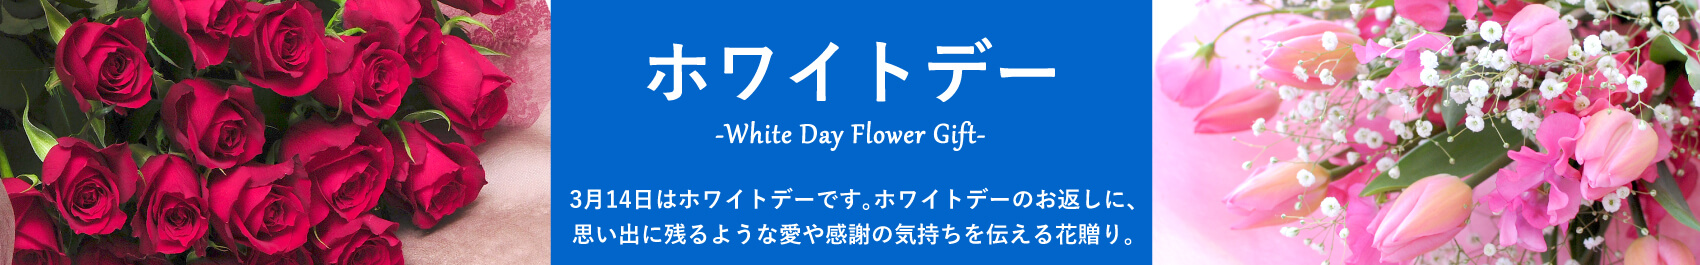 ホワイトデーのお返しに贈る花